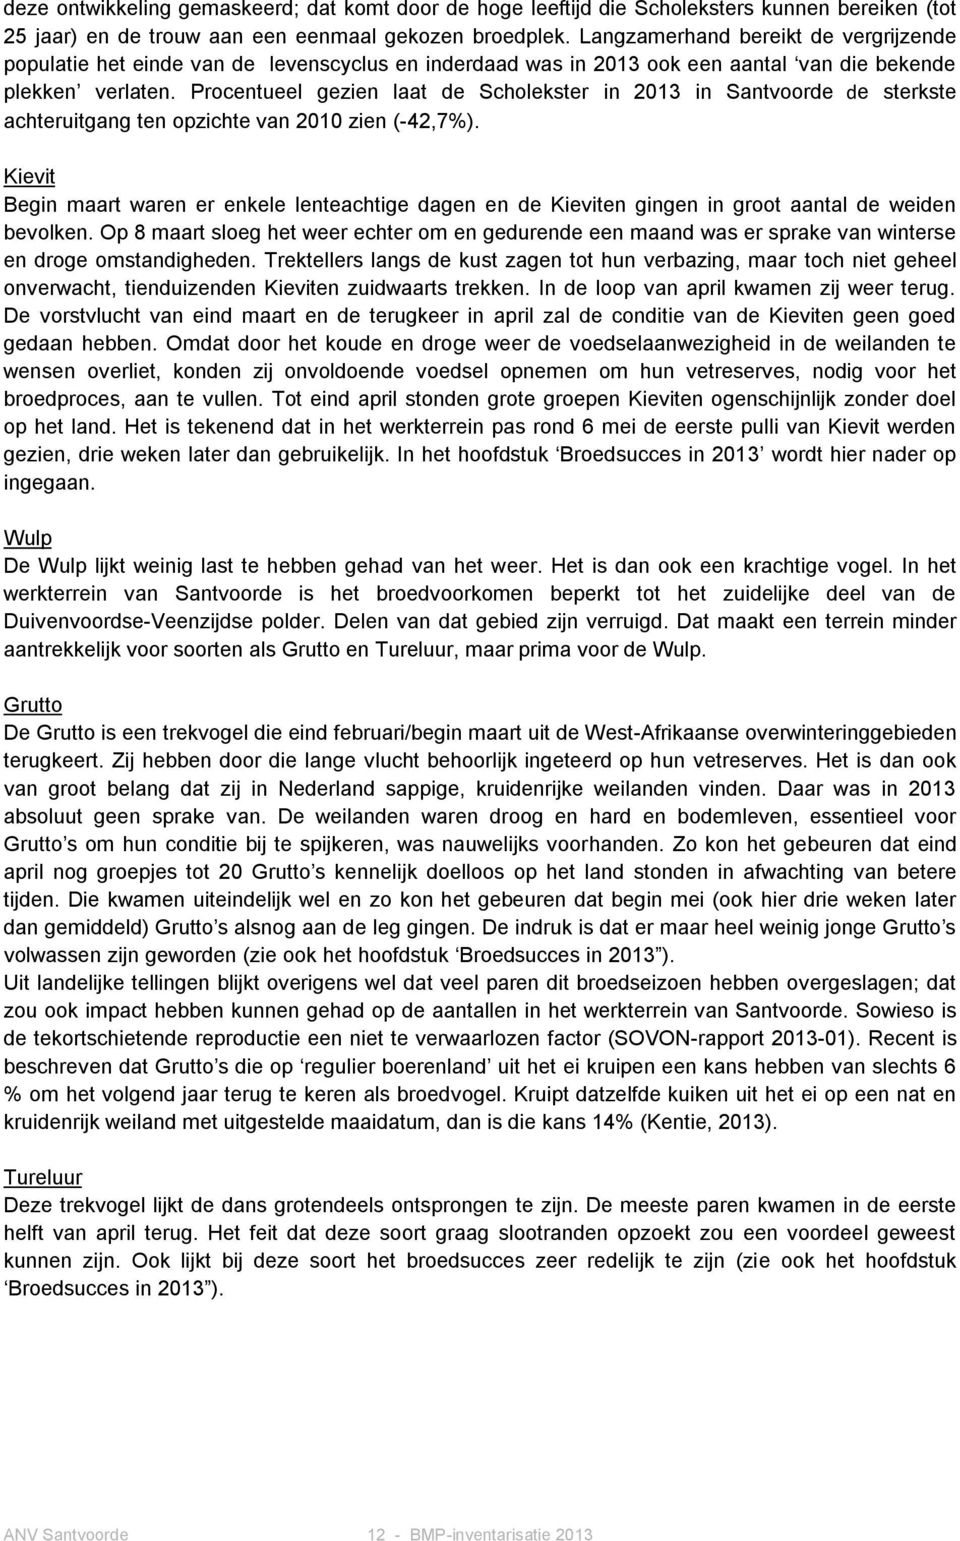 Procentueel gezien laat de Scholekster in 2013 in Santvoorde de sterkste achteruitgang ten opzichte van 2010 zien (-42,7%).